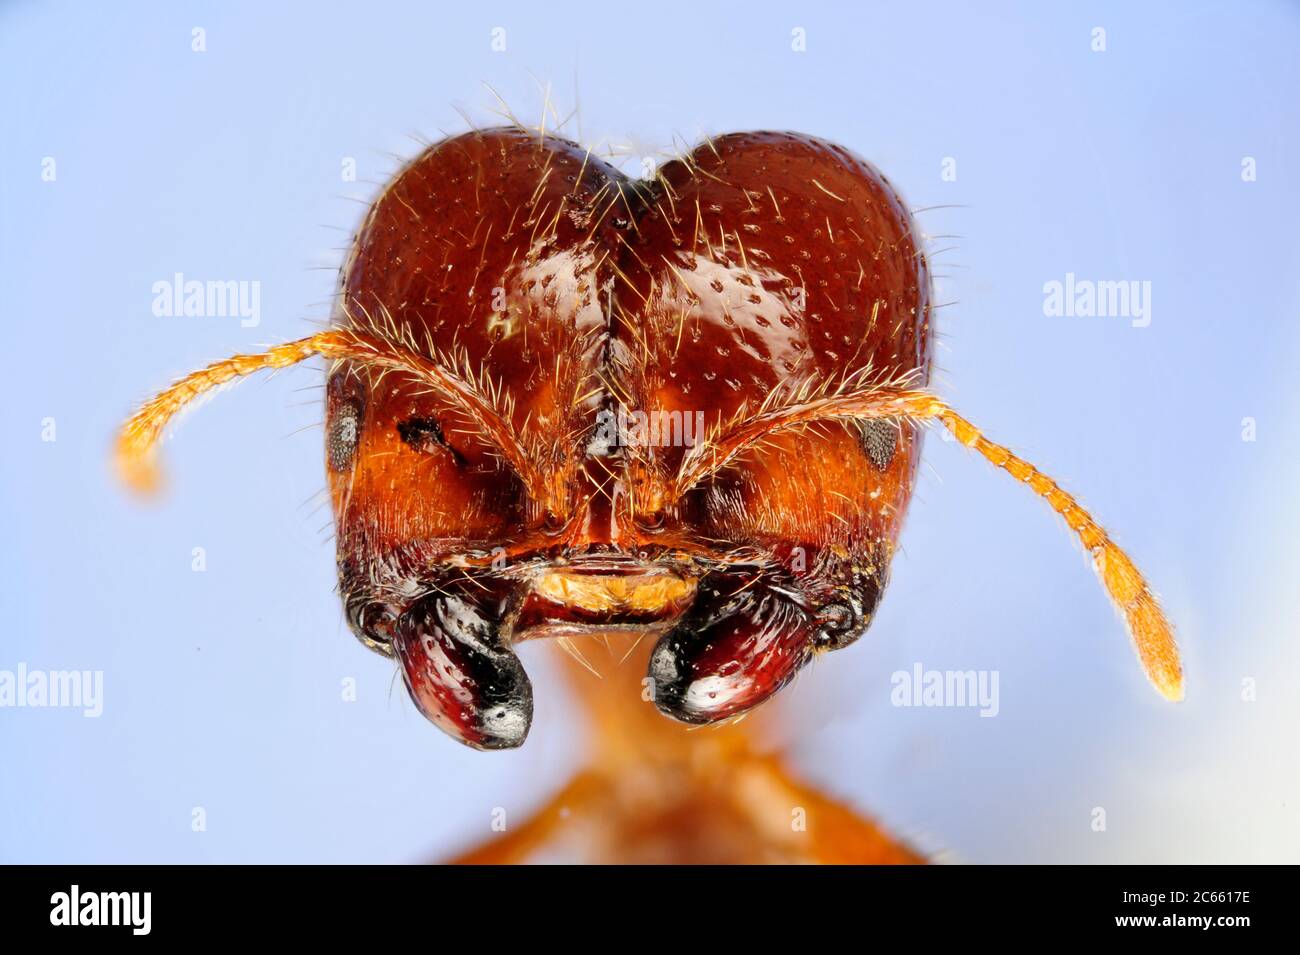 [Digital Focus Stacking] Ameisenportrait, Solenopsis geminata ist eine von mehreren Arten, die als Feuerameisen bekannt sind, das Bild wurde in Zusammenarbeit mit dem 'Staatl. Museum für Naturkunde Karlsruhe'. Stockfoto